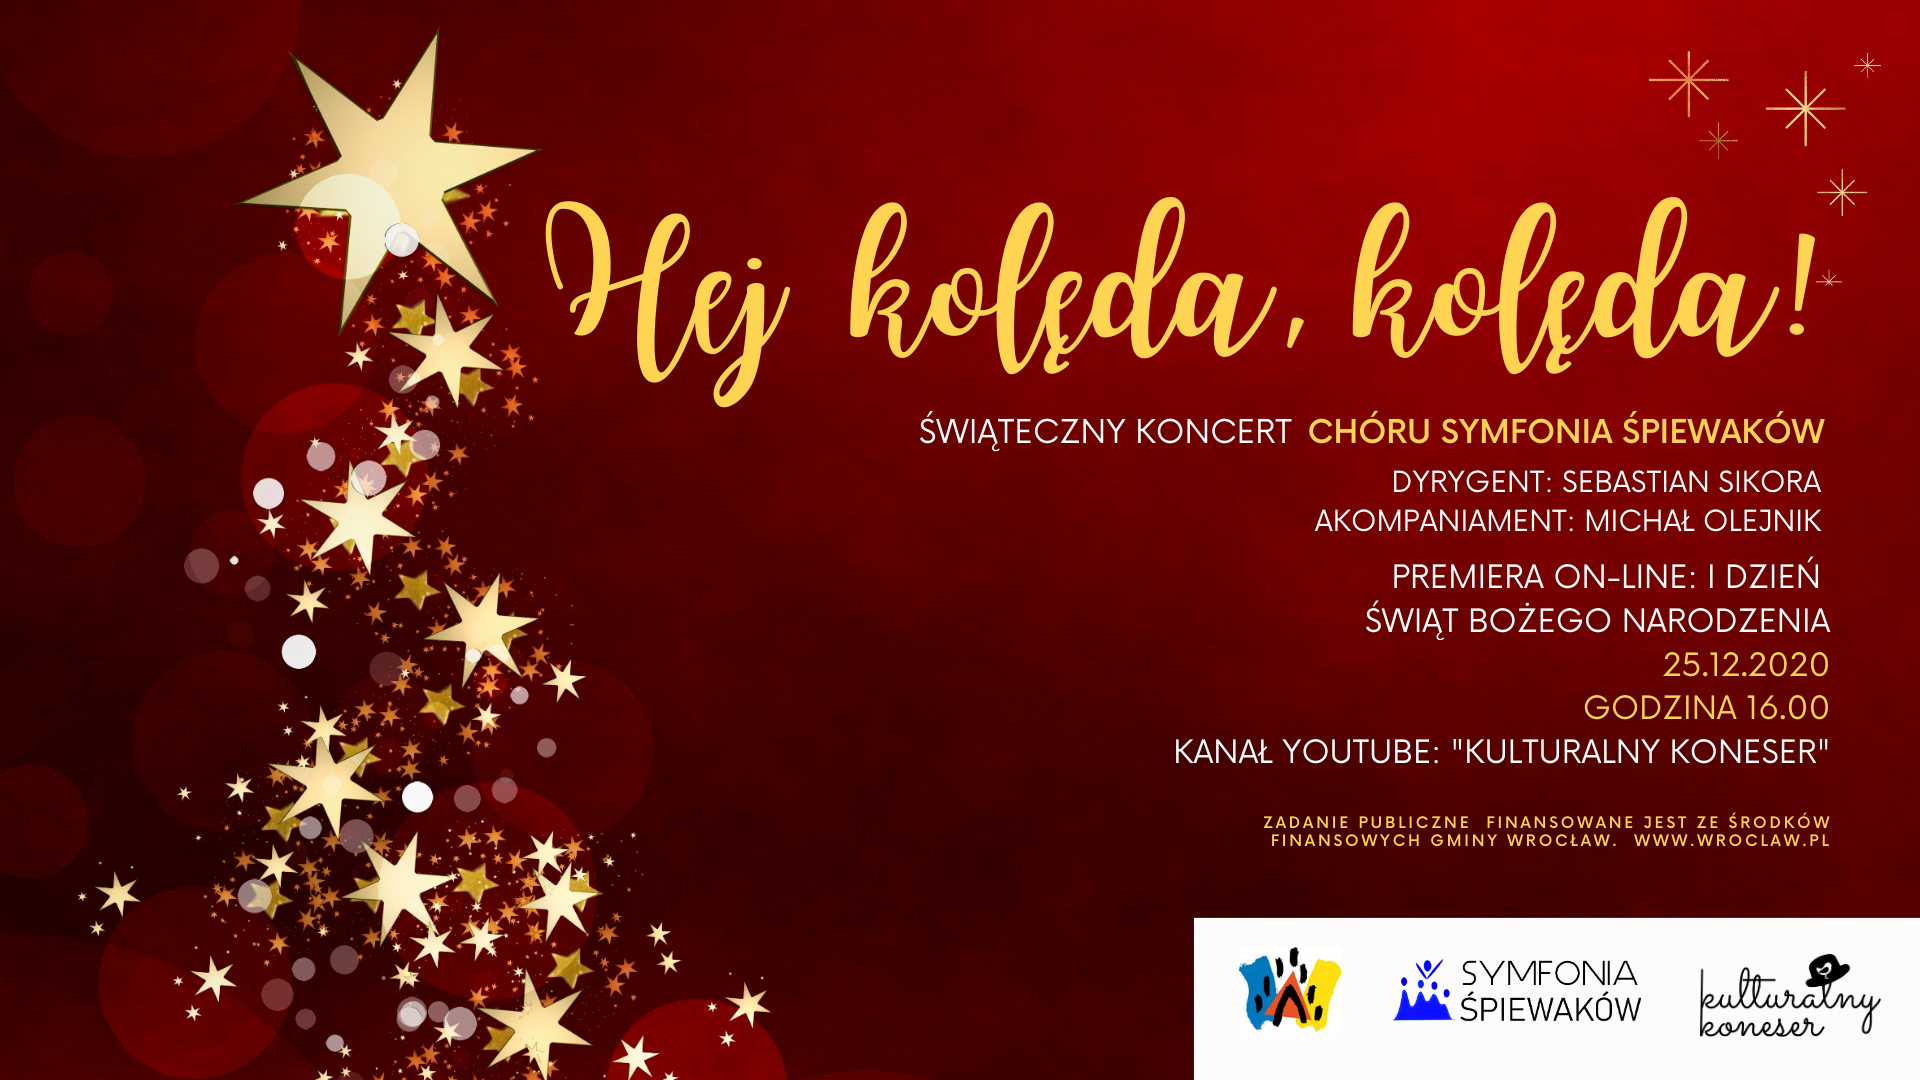 Świąteczny Koncert “Hej kolęda, kolęda!” – Symfonia Śpiewaków